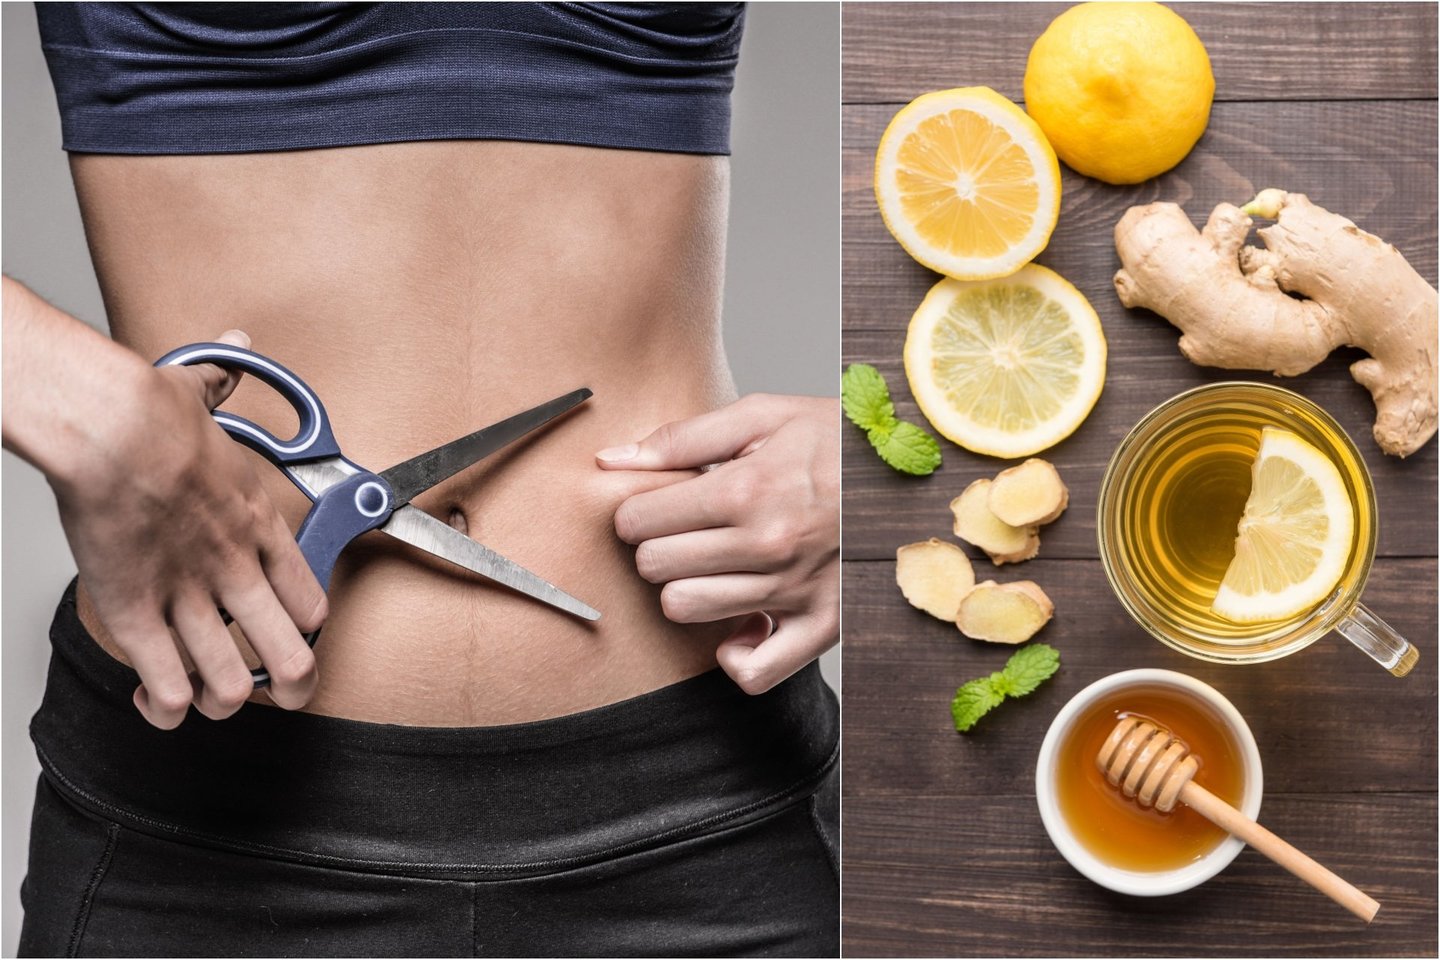  Imbierinė arbata su citrina gali padėti kovoti su nepageidaujamais fiziniais veiksniais.<br> 123rf.com nuotr.